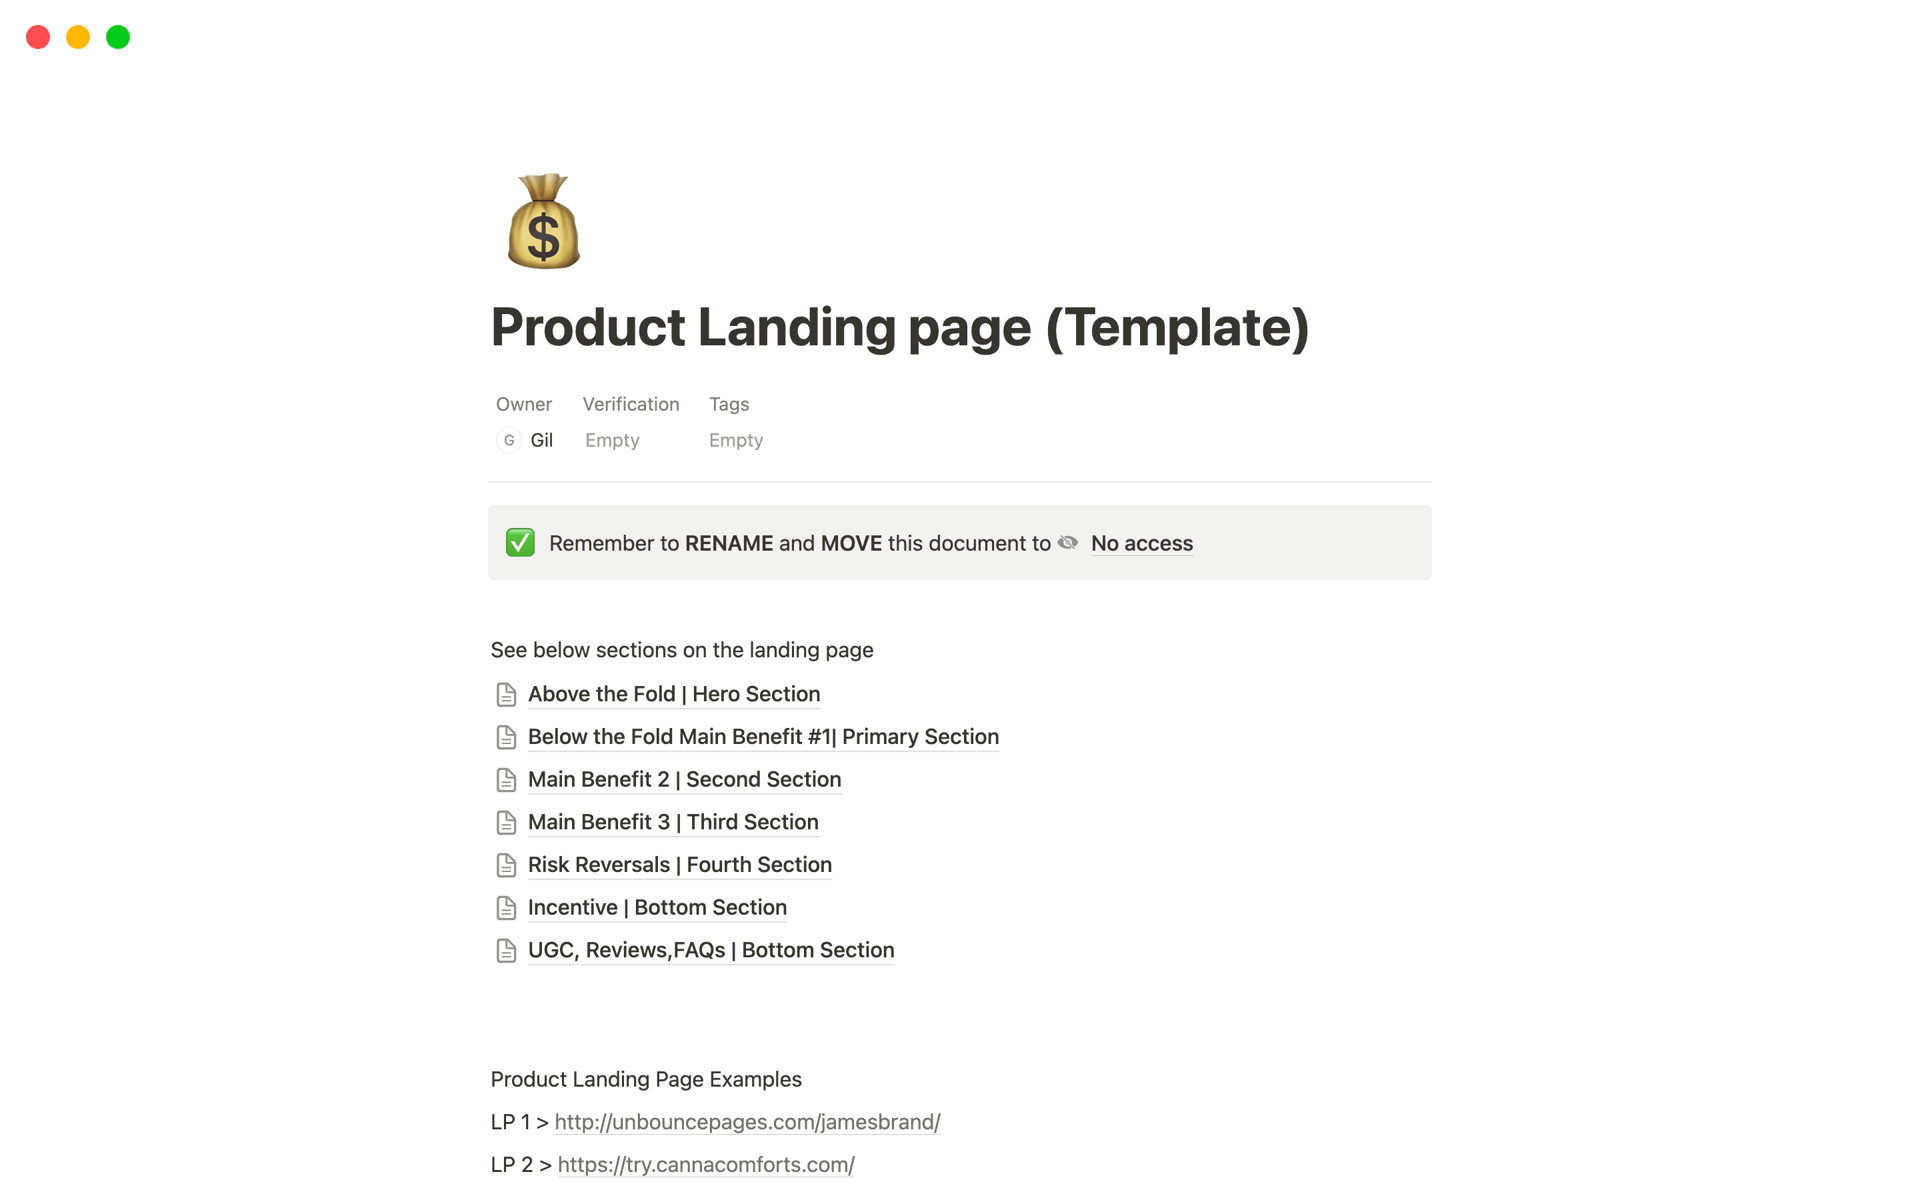 Uma prévia do modelo para Product Landing page